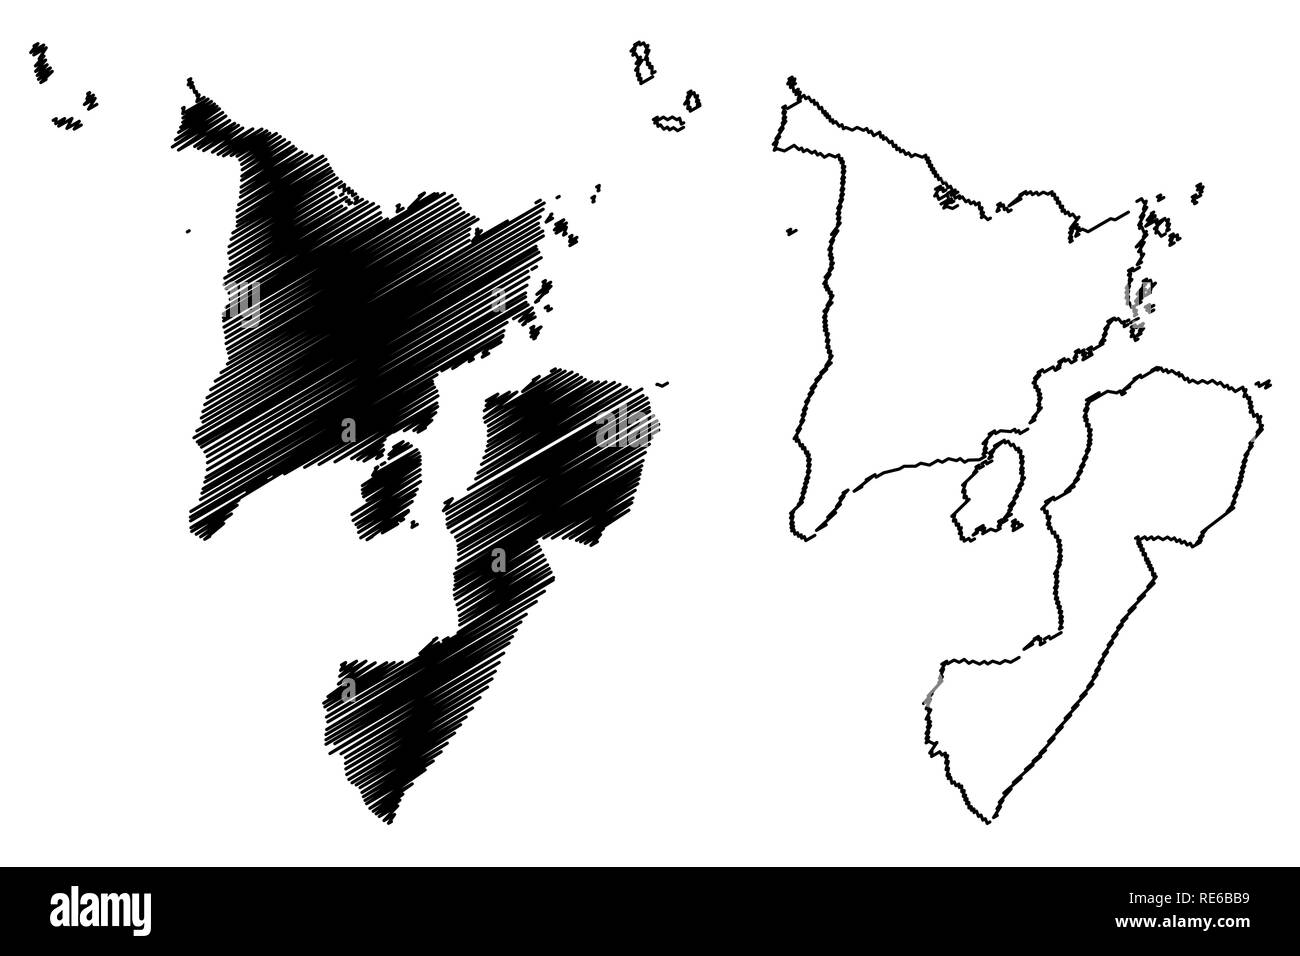 Western Visayas Region (Regionen und Provinzen der Philippinen, die Republik der Philippinen) Karte Vektor-illustration, kritzeln Skizze Region VI Karte Stock Vektor